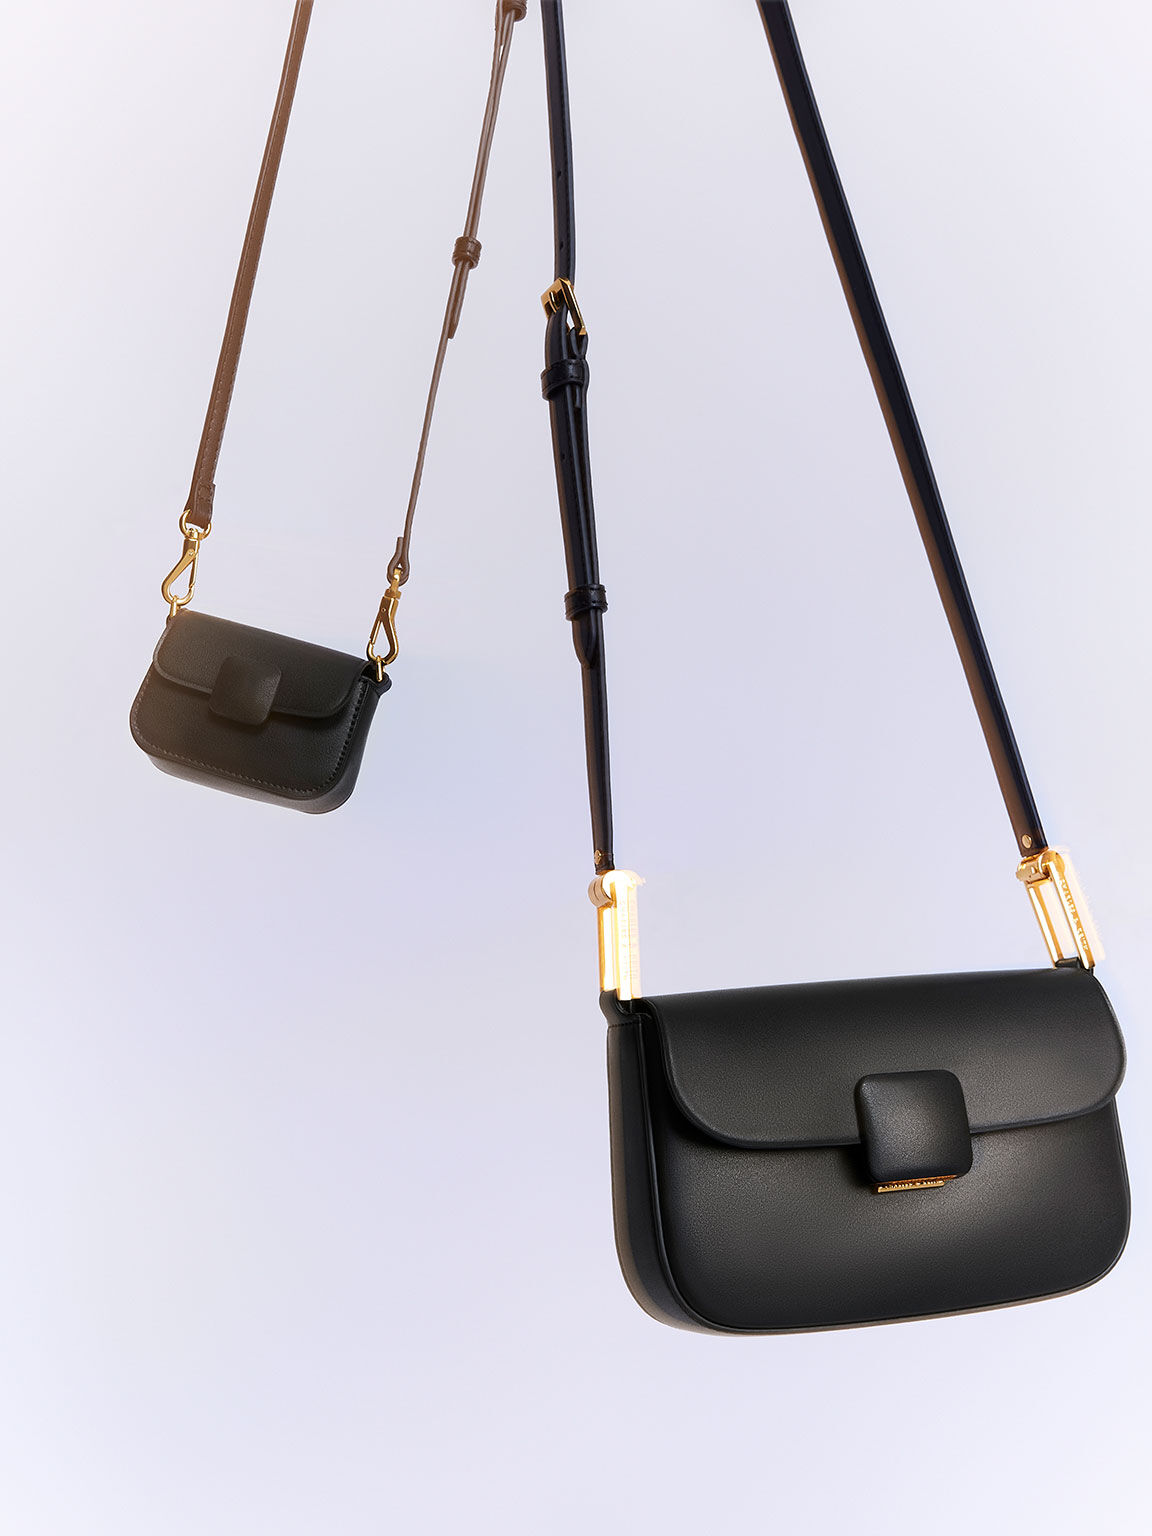 New Hot 3 In One Bag Women's Bags Fashion Versatile Shoulder Bag Chain Bag  Messenger Bag Mobile Phone Bag Card Bag The Single Shoulder Bag